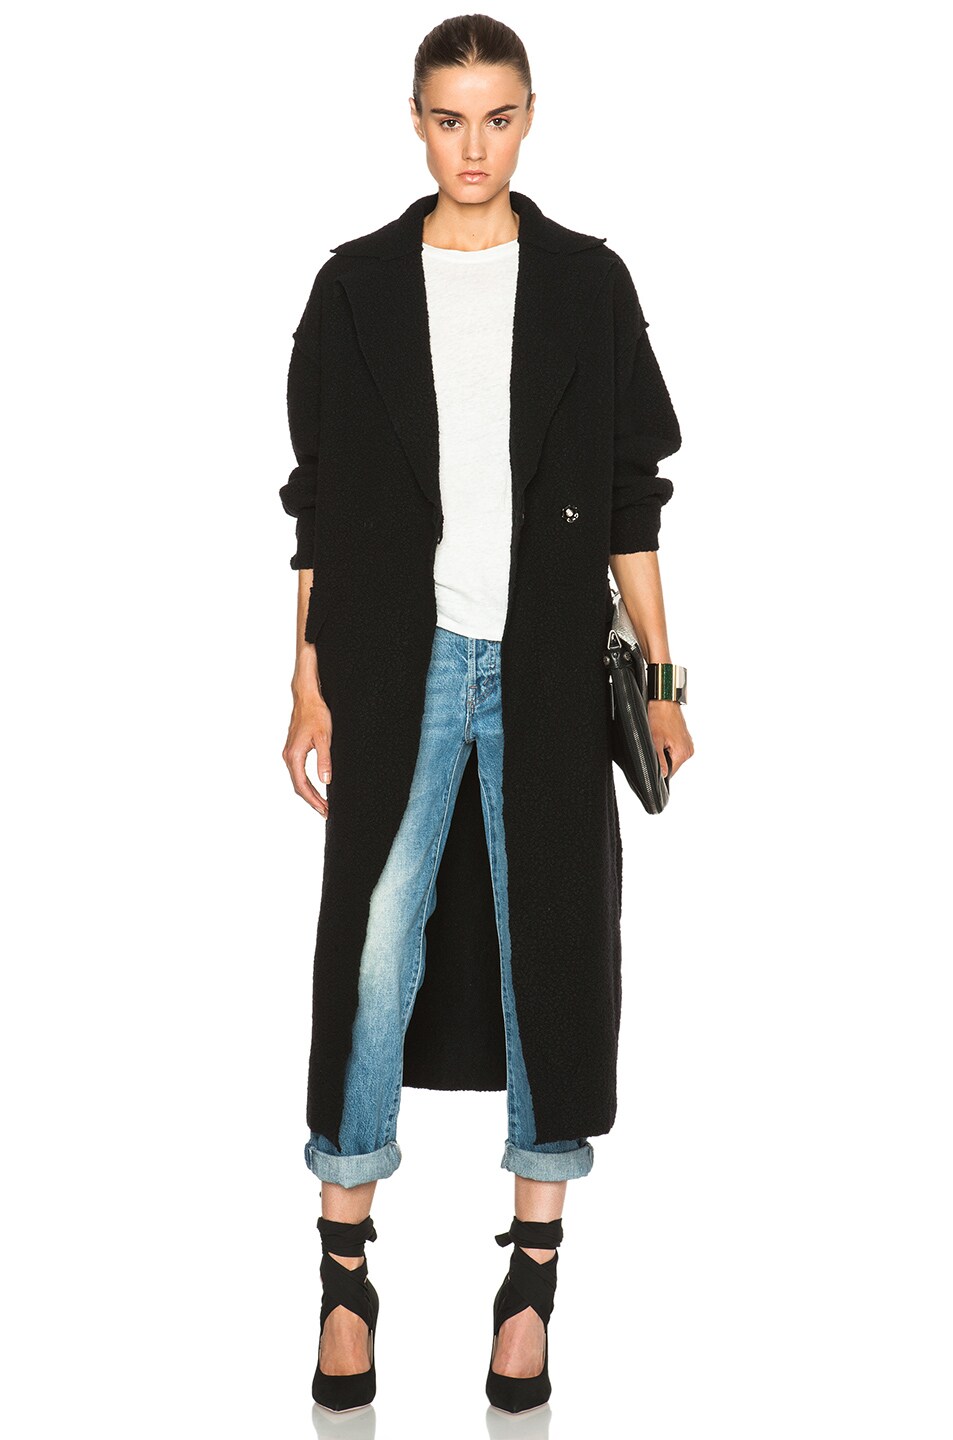 M Missoni Wool Long Coat in Black | FWRD